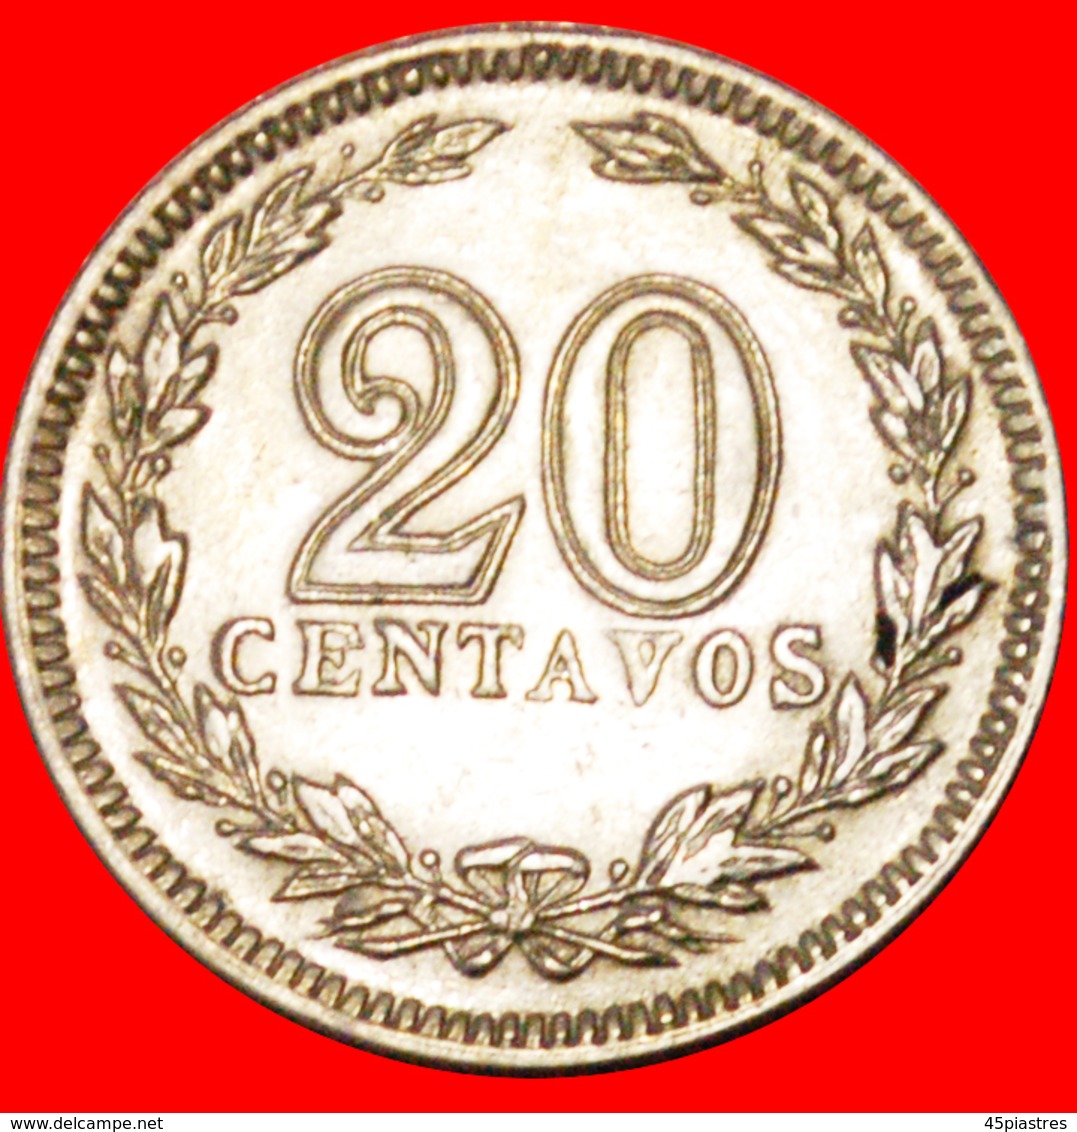 # STARS: ARGENTINA ★ 20 CENTAVOS 1935! LOW START ★ NO RESERVE! - Argentine